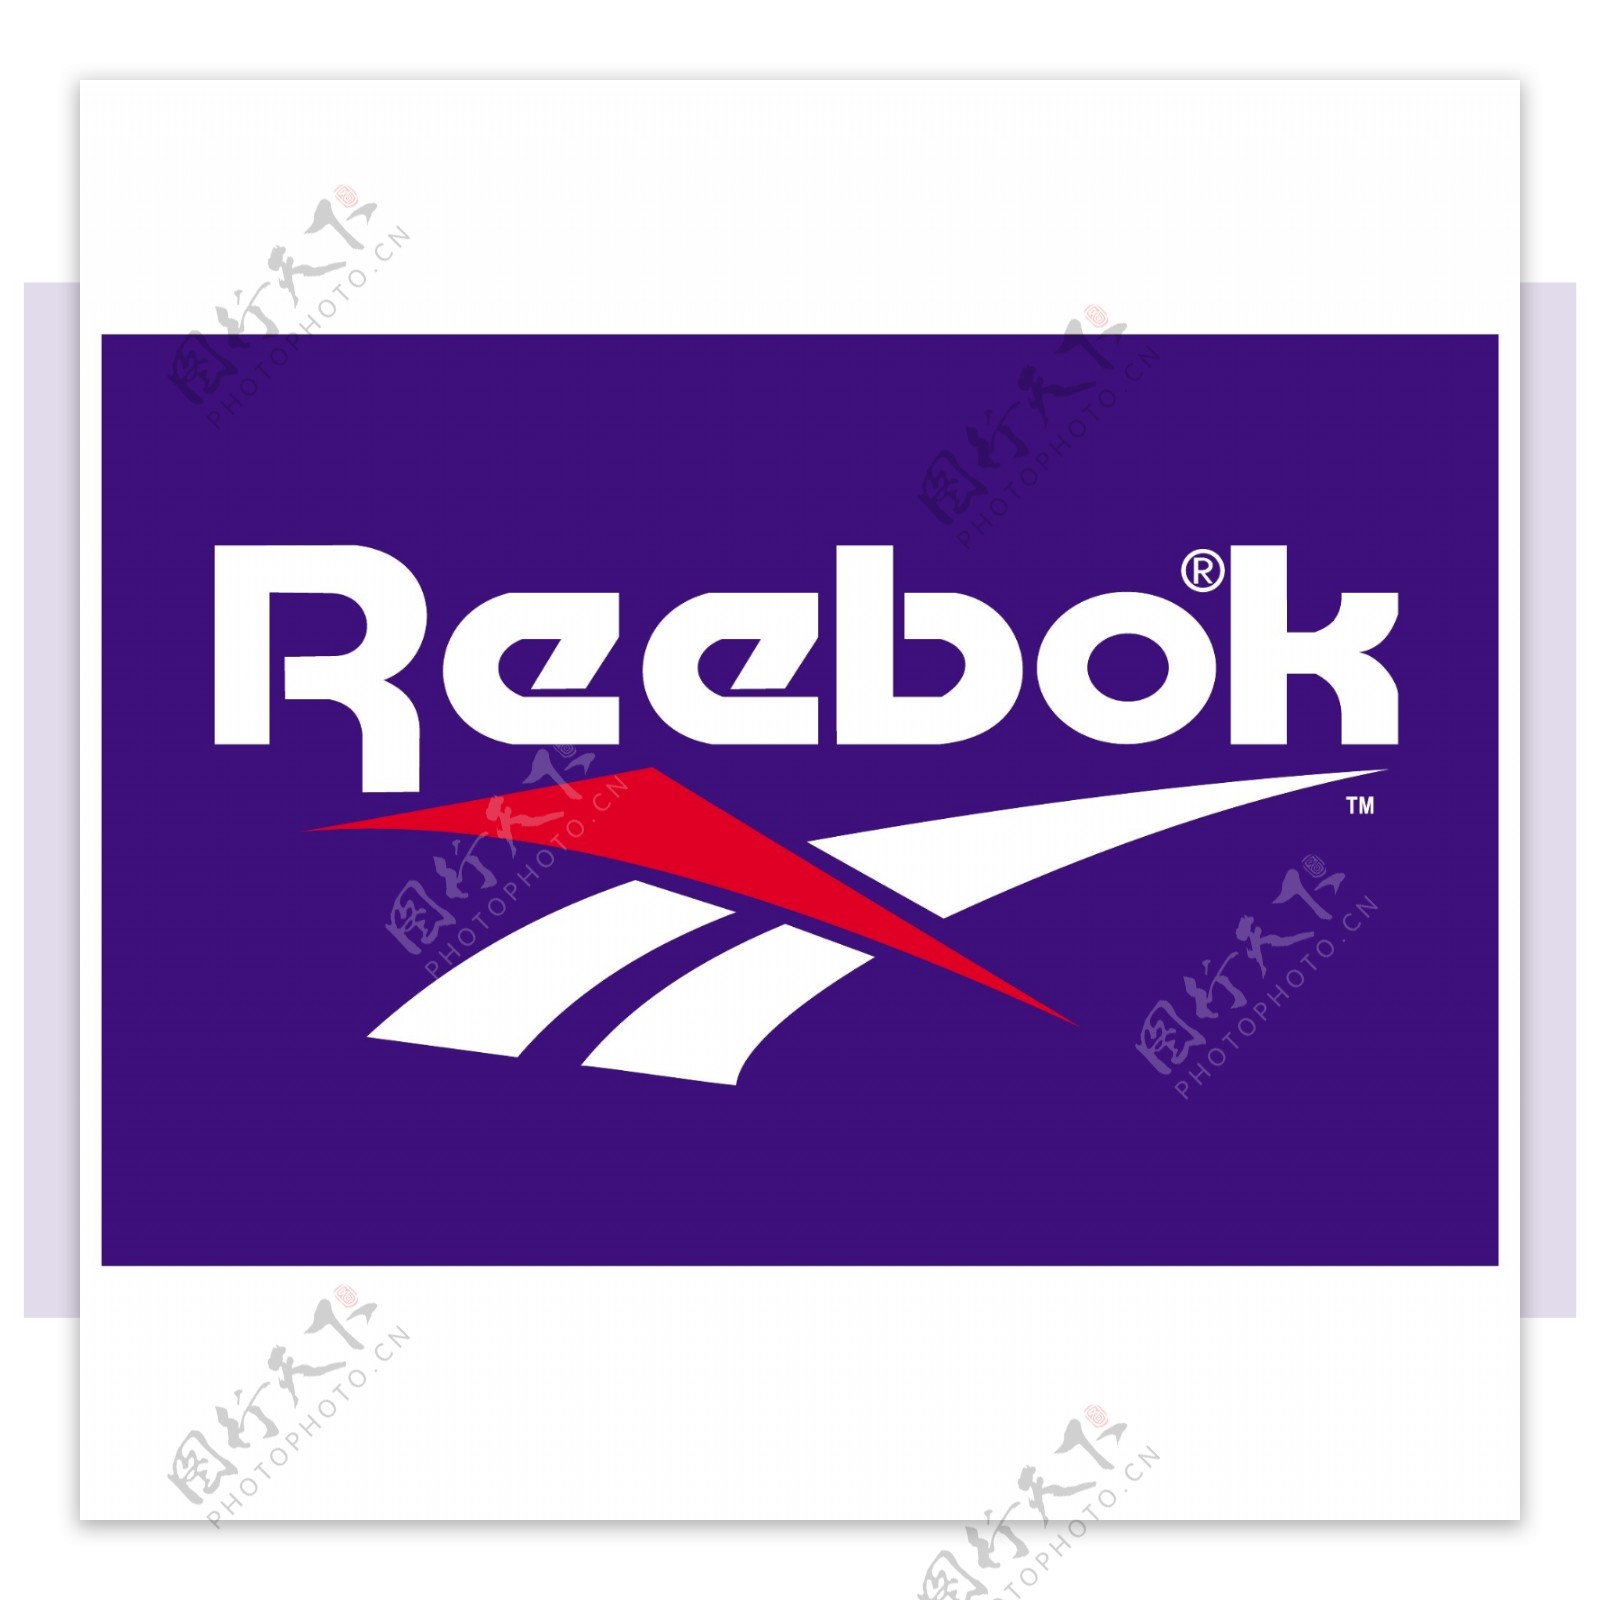 锐步Reebok企业标志图片